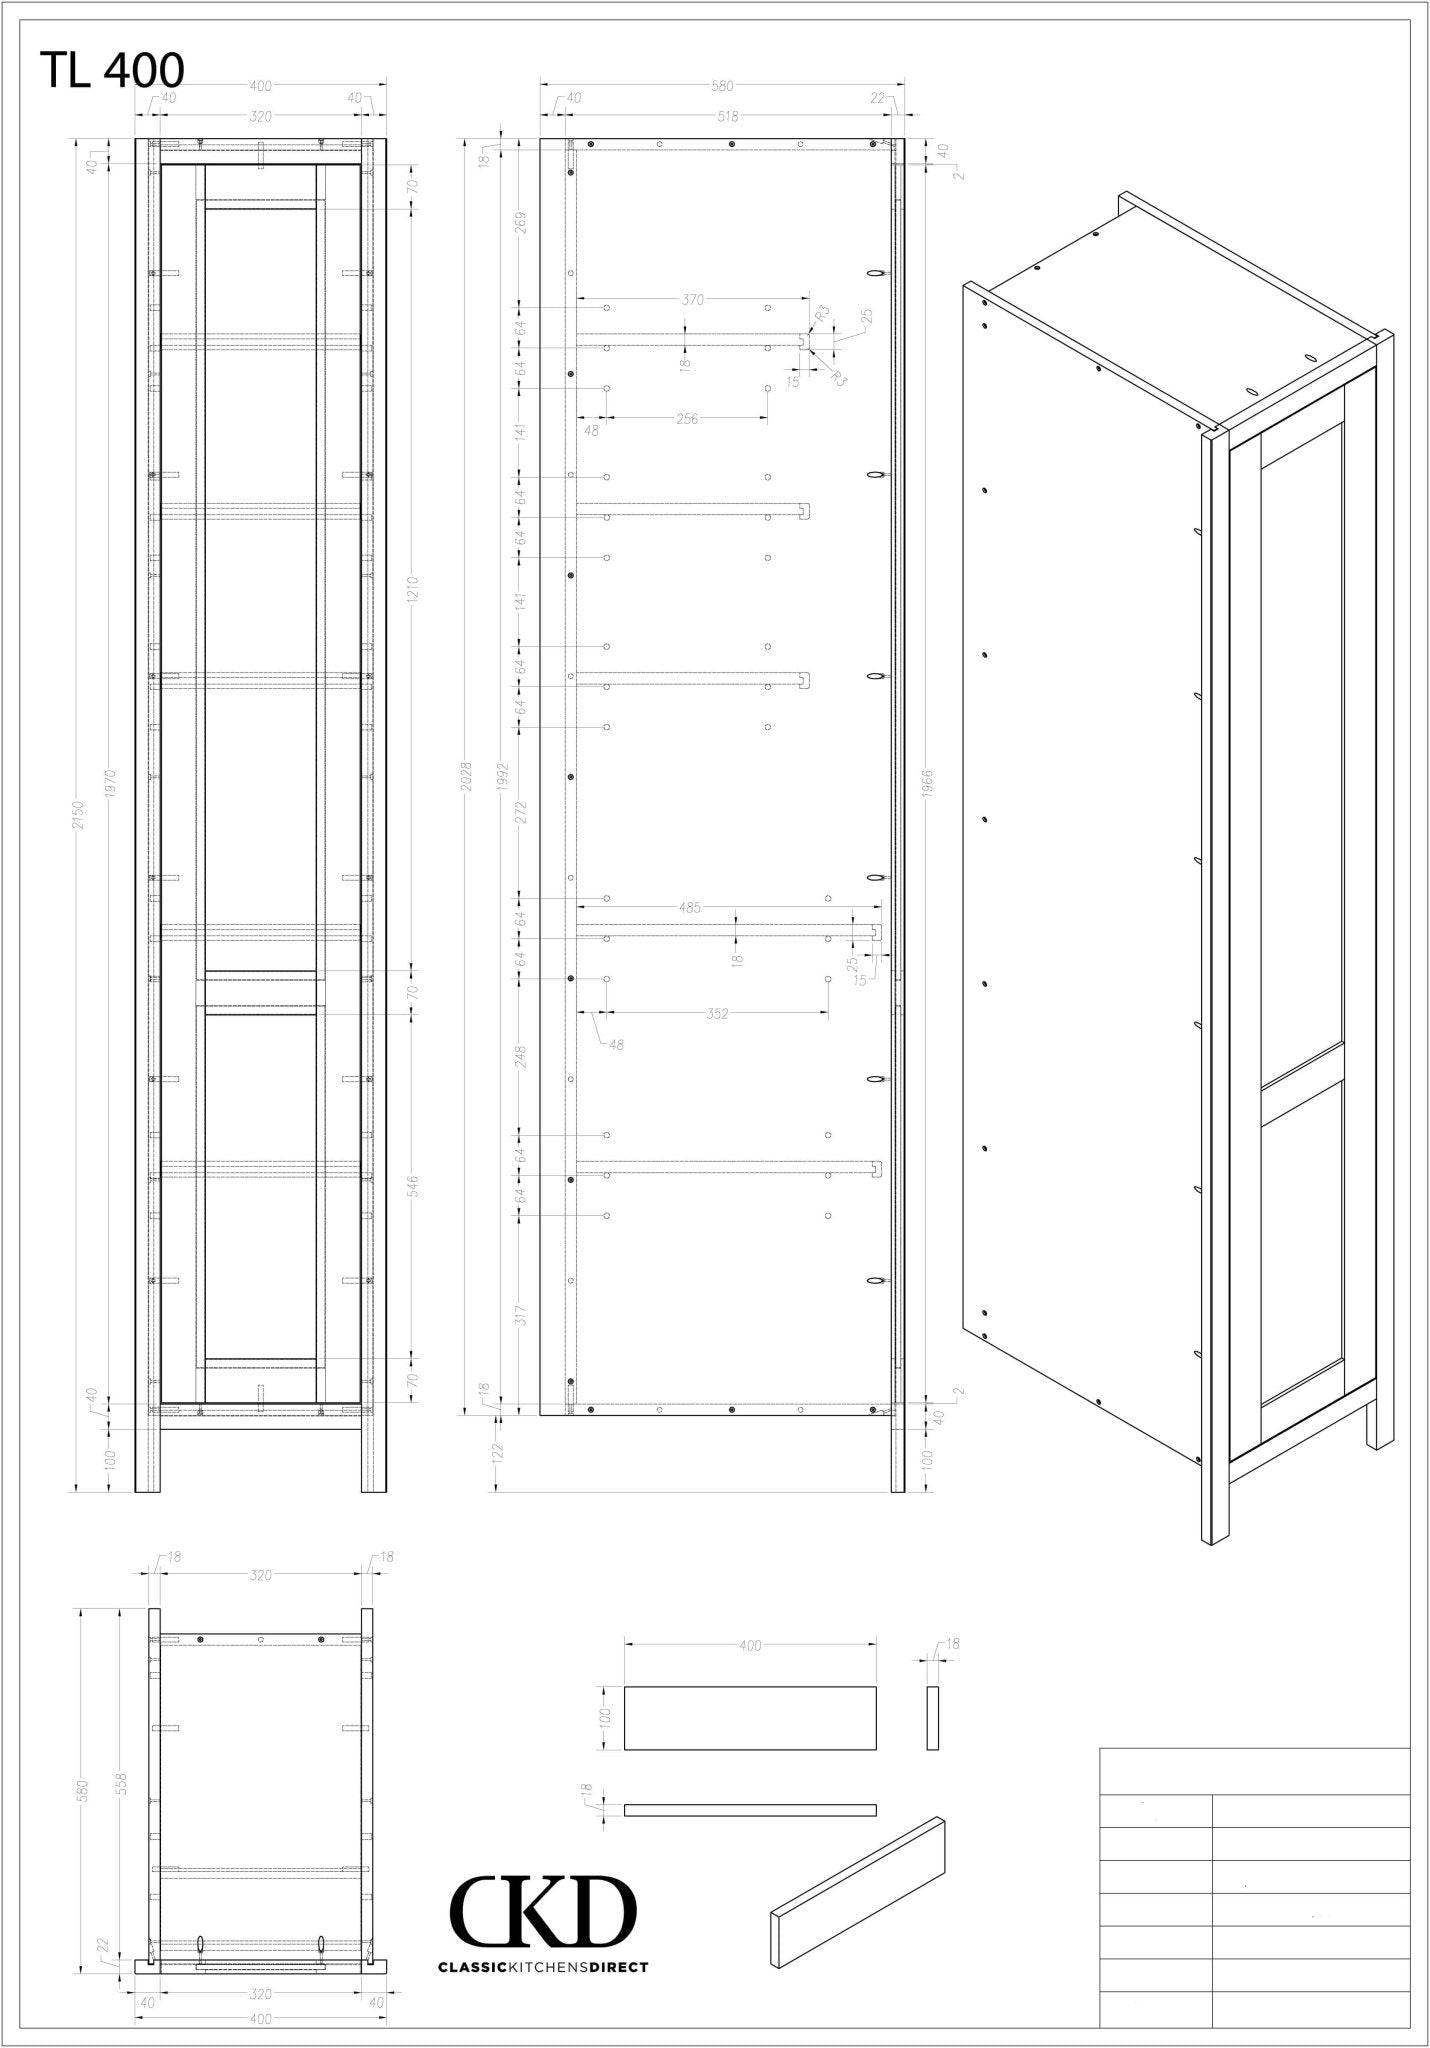 TL 400 - 400mm Wide Tall single door larder Unit - Classic Kitchens Direct